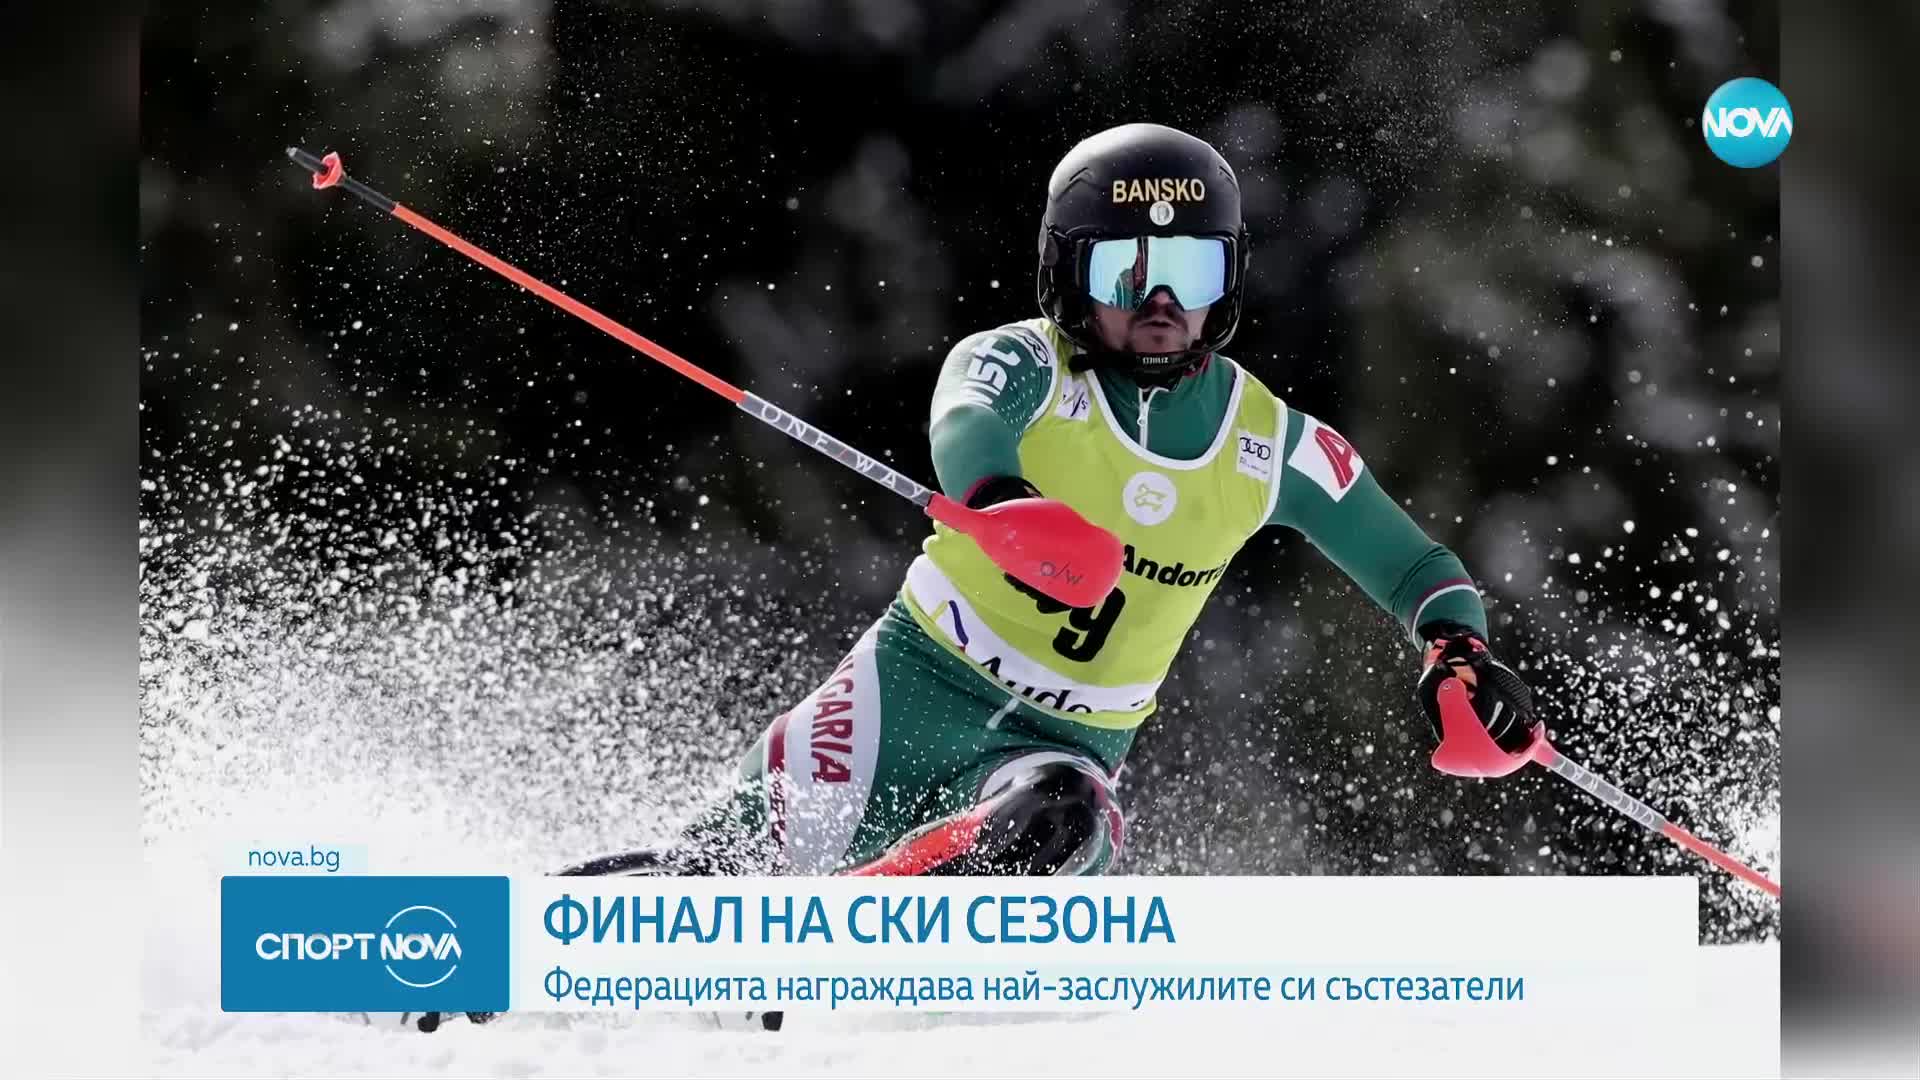 Финал на ски сезона: федерацията награди най-заслужилите си състезатели